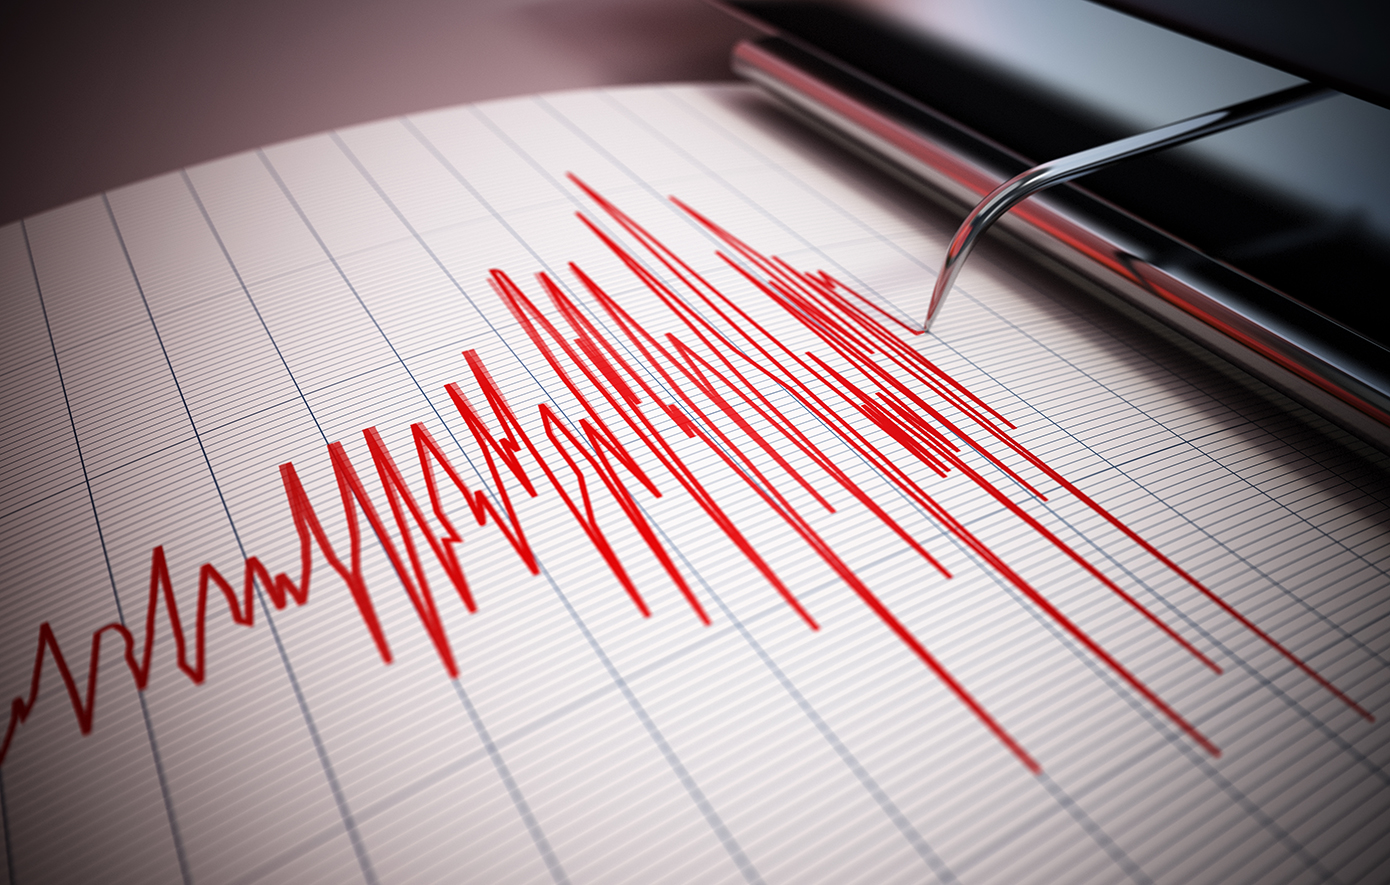 Σεισμός 5,6 βαθμών της κλίμακας Ρίχτερ στην Τουρκία